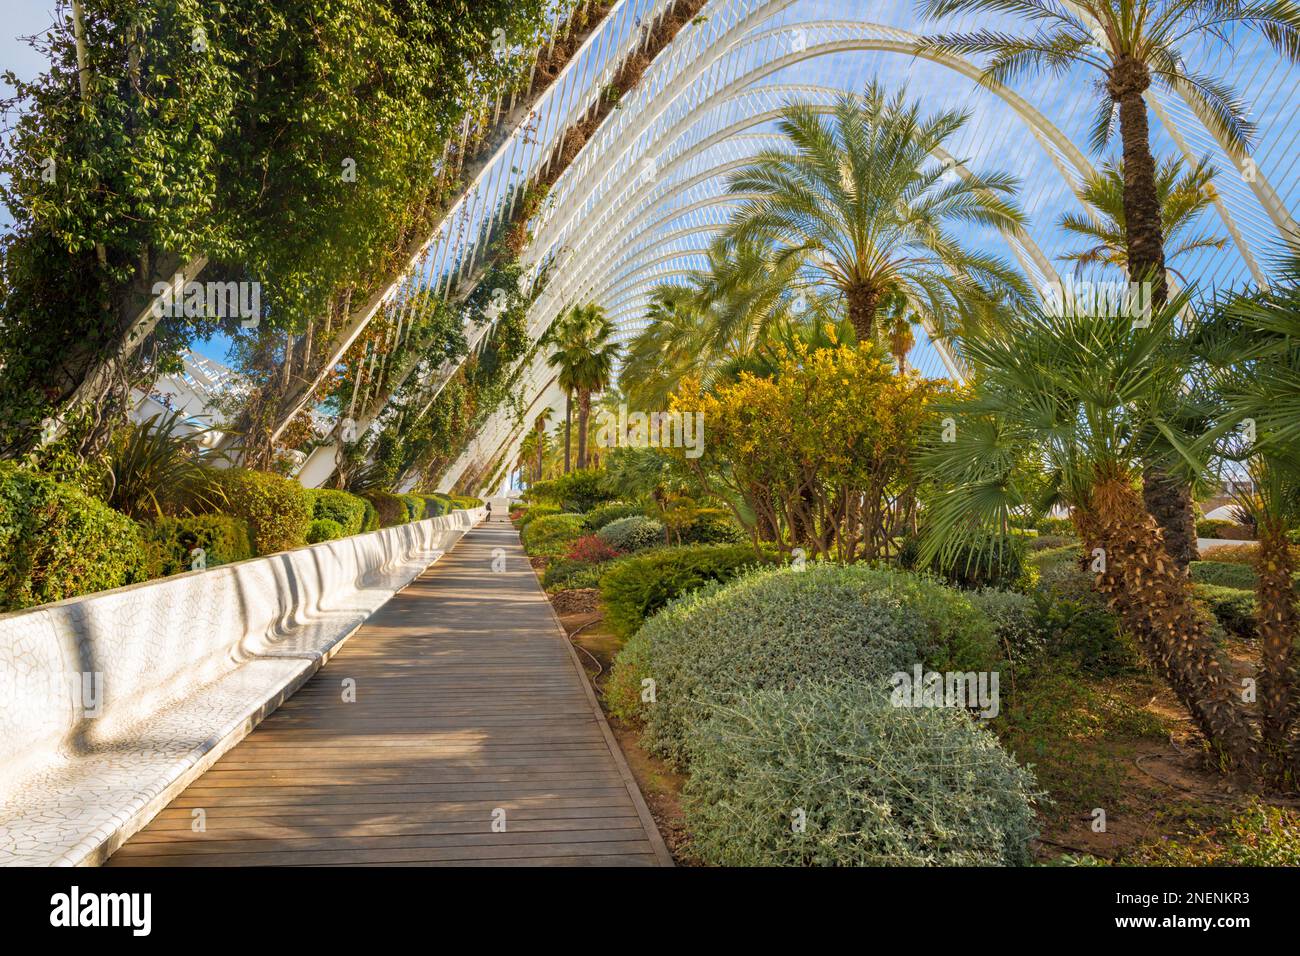 VALENCE, ESPAGNE - 15 FÉVRIER 2022 : le jardin de sculptures de l'Umbracle fait partie de la Cité des Arts conçue par Santiago Calatrava. Banque D'Images